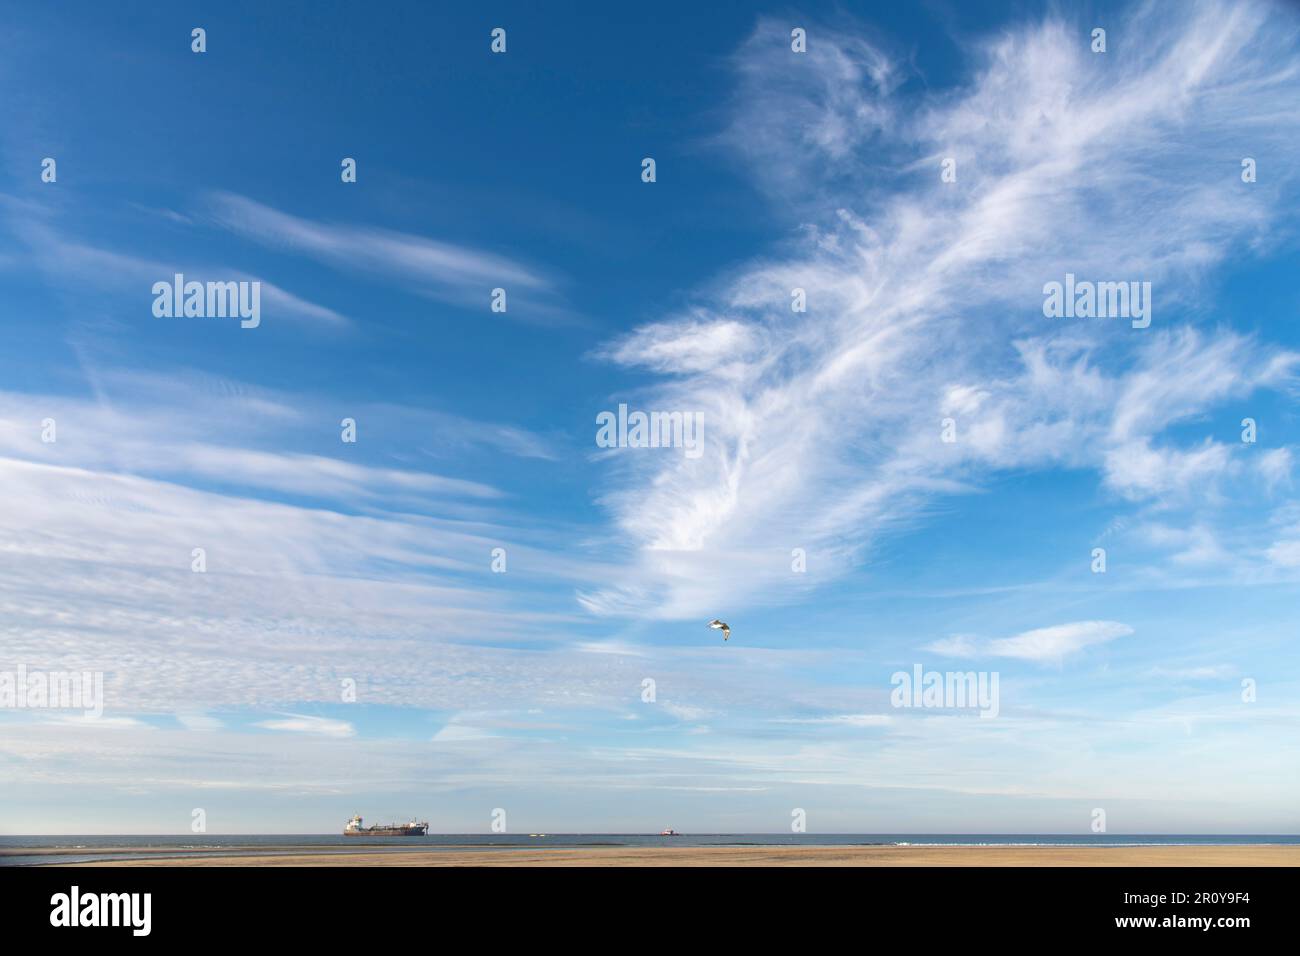 Paesaggio di un cielo blu con nuvole di piume al largo della costa dei Paesi Bassi con una nave in mare aperto e un uccello che vola sopra una sottile striscia di spiaggia Foto Stock